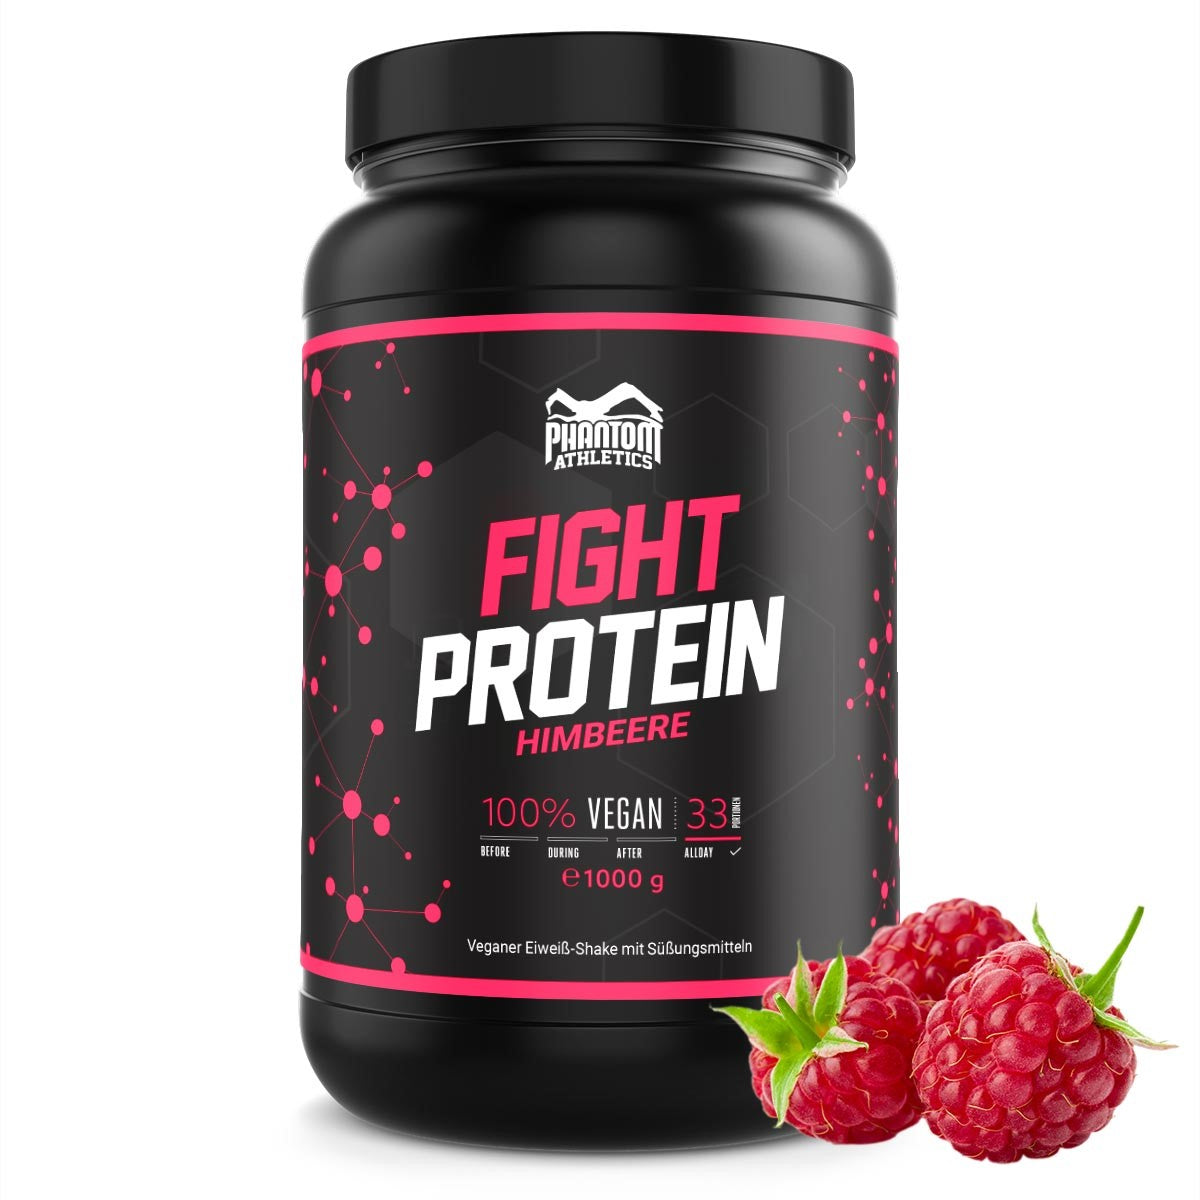 Fight protein - raspberry - 1000g